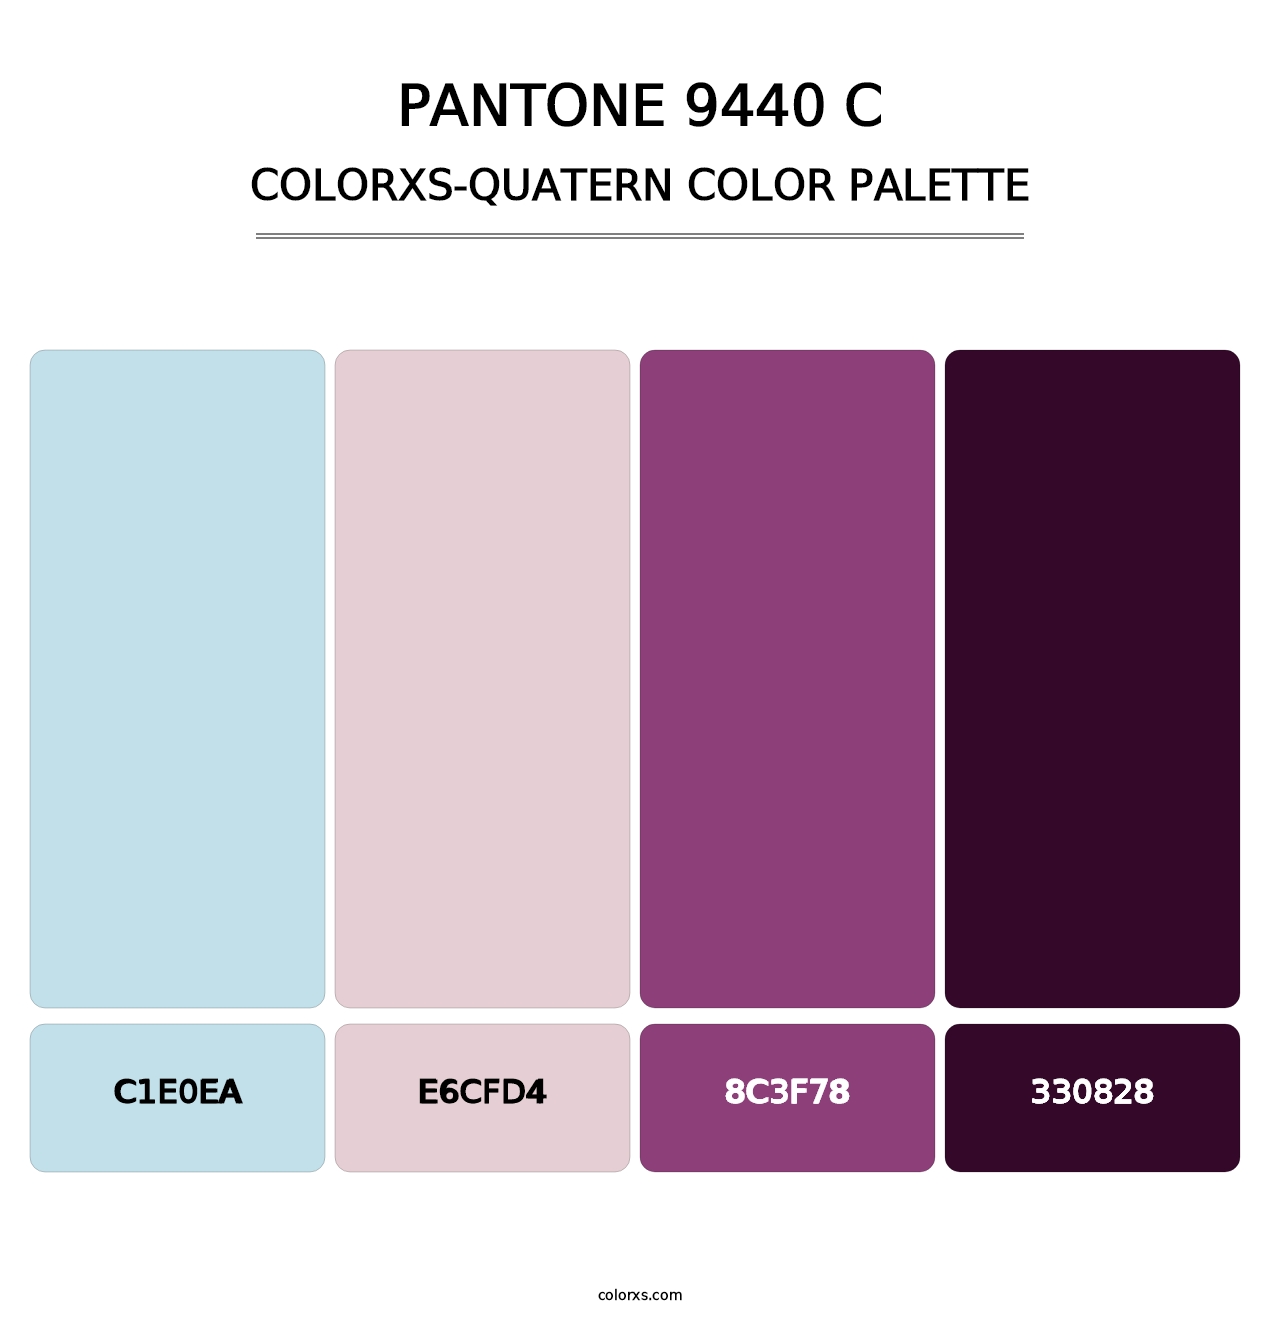 PANTONE 9440 C - Colorxs Quatern Palette